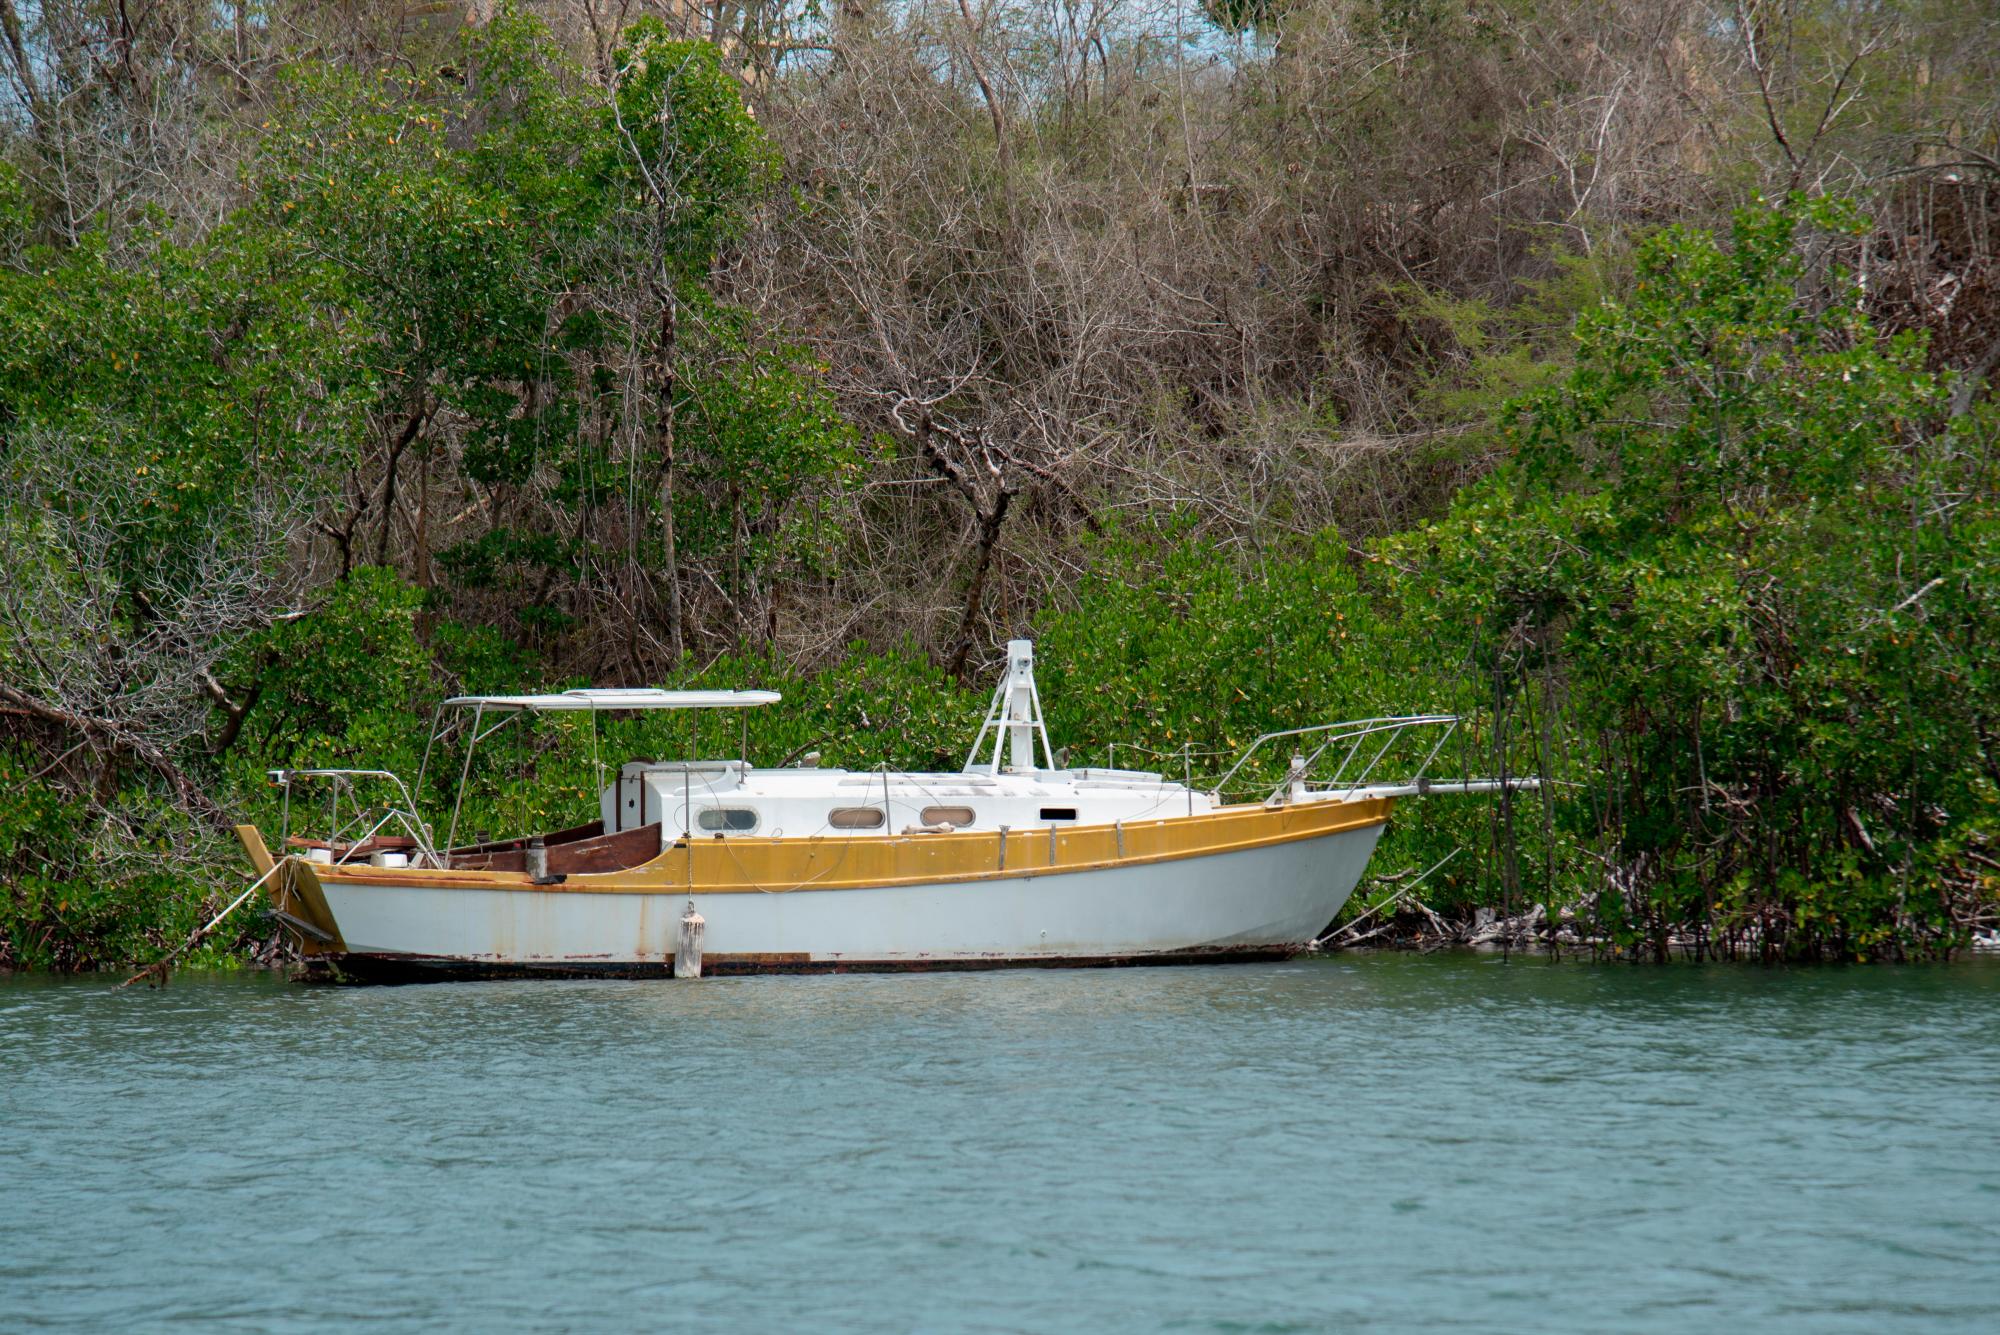 Una embarcación permanece amarrada a los manglares dentro del área protegida lo que puede significar un daño al ecosistema.